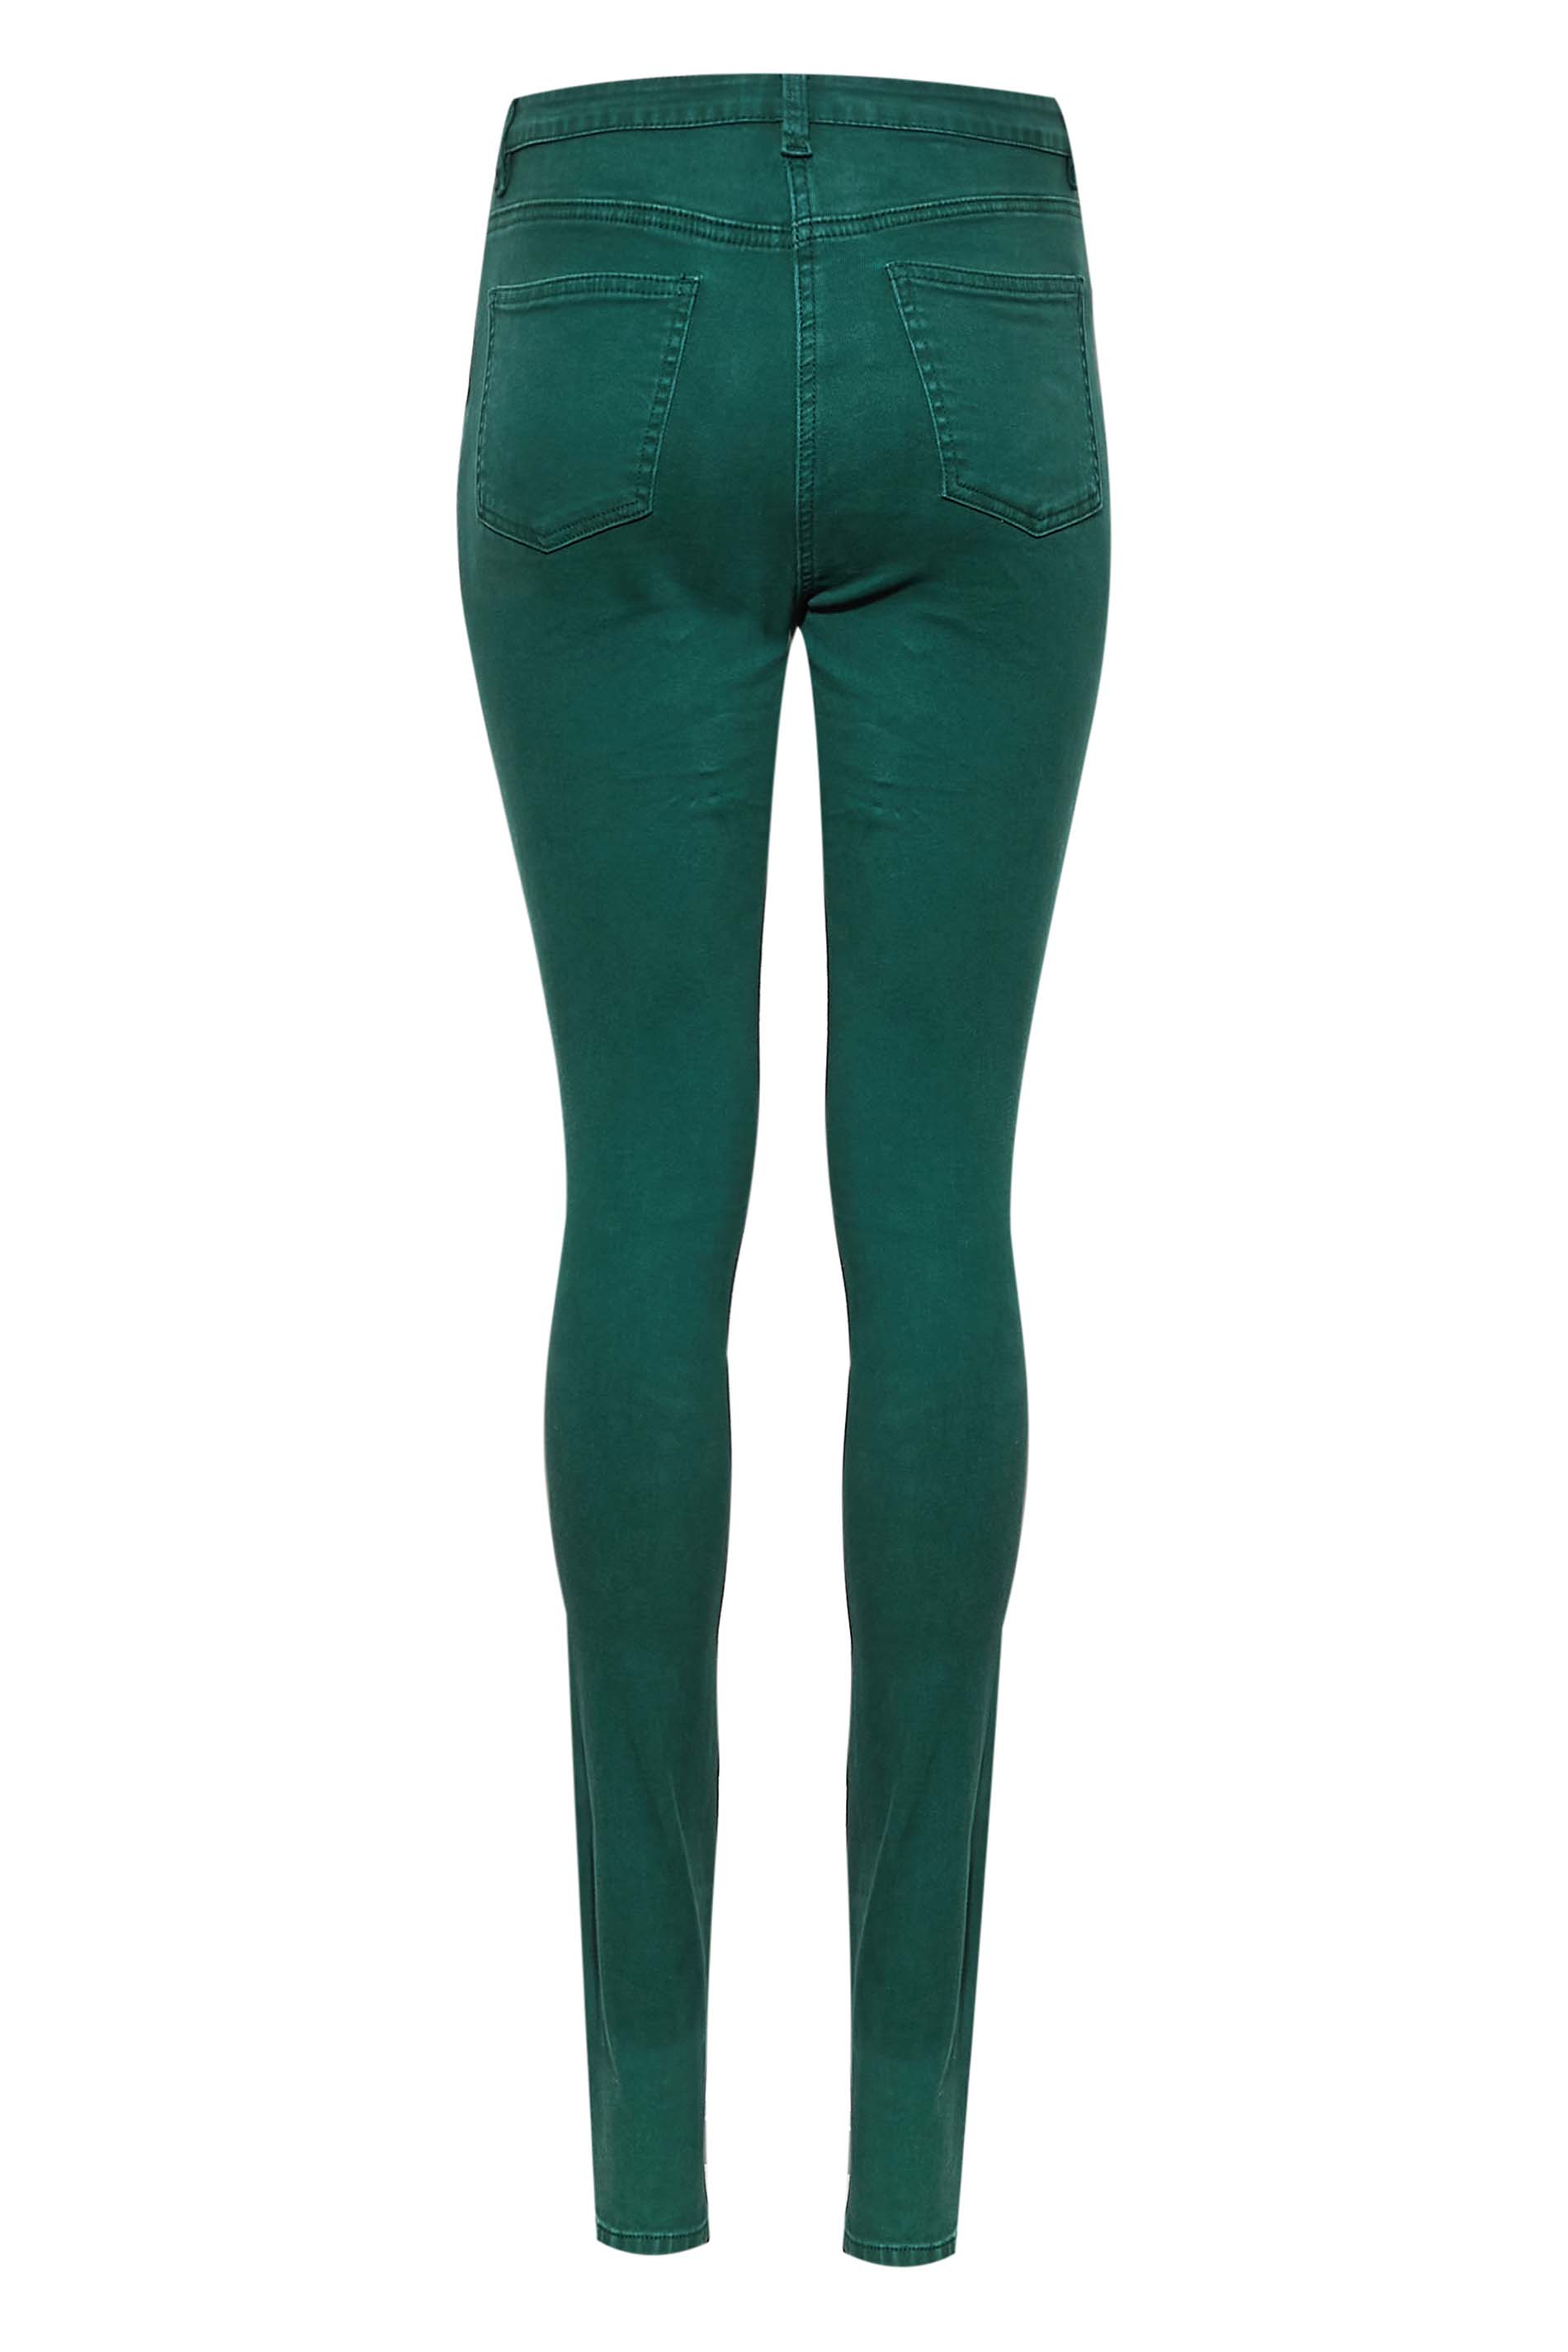 LTS Tall Women's Dark Green AVA Skinny Jeans